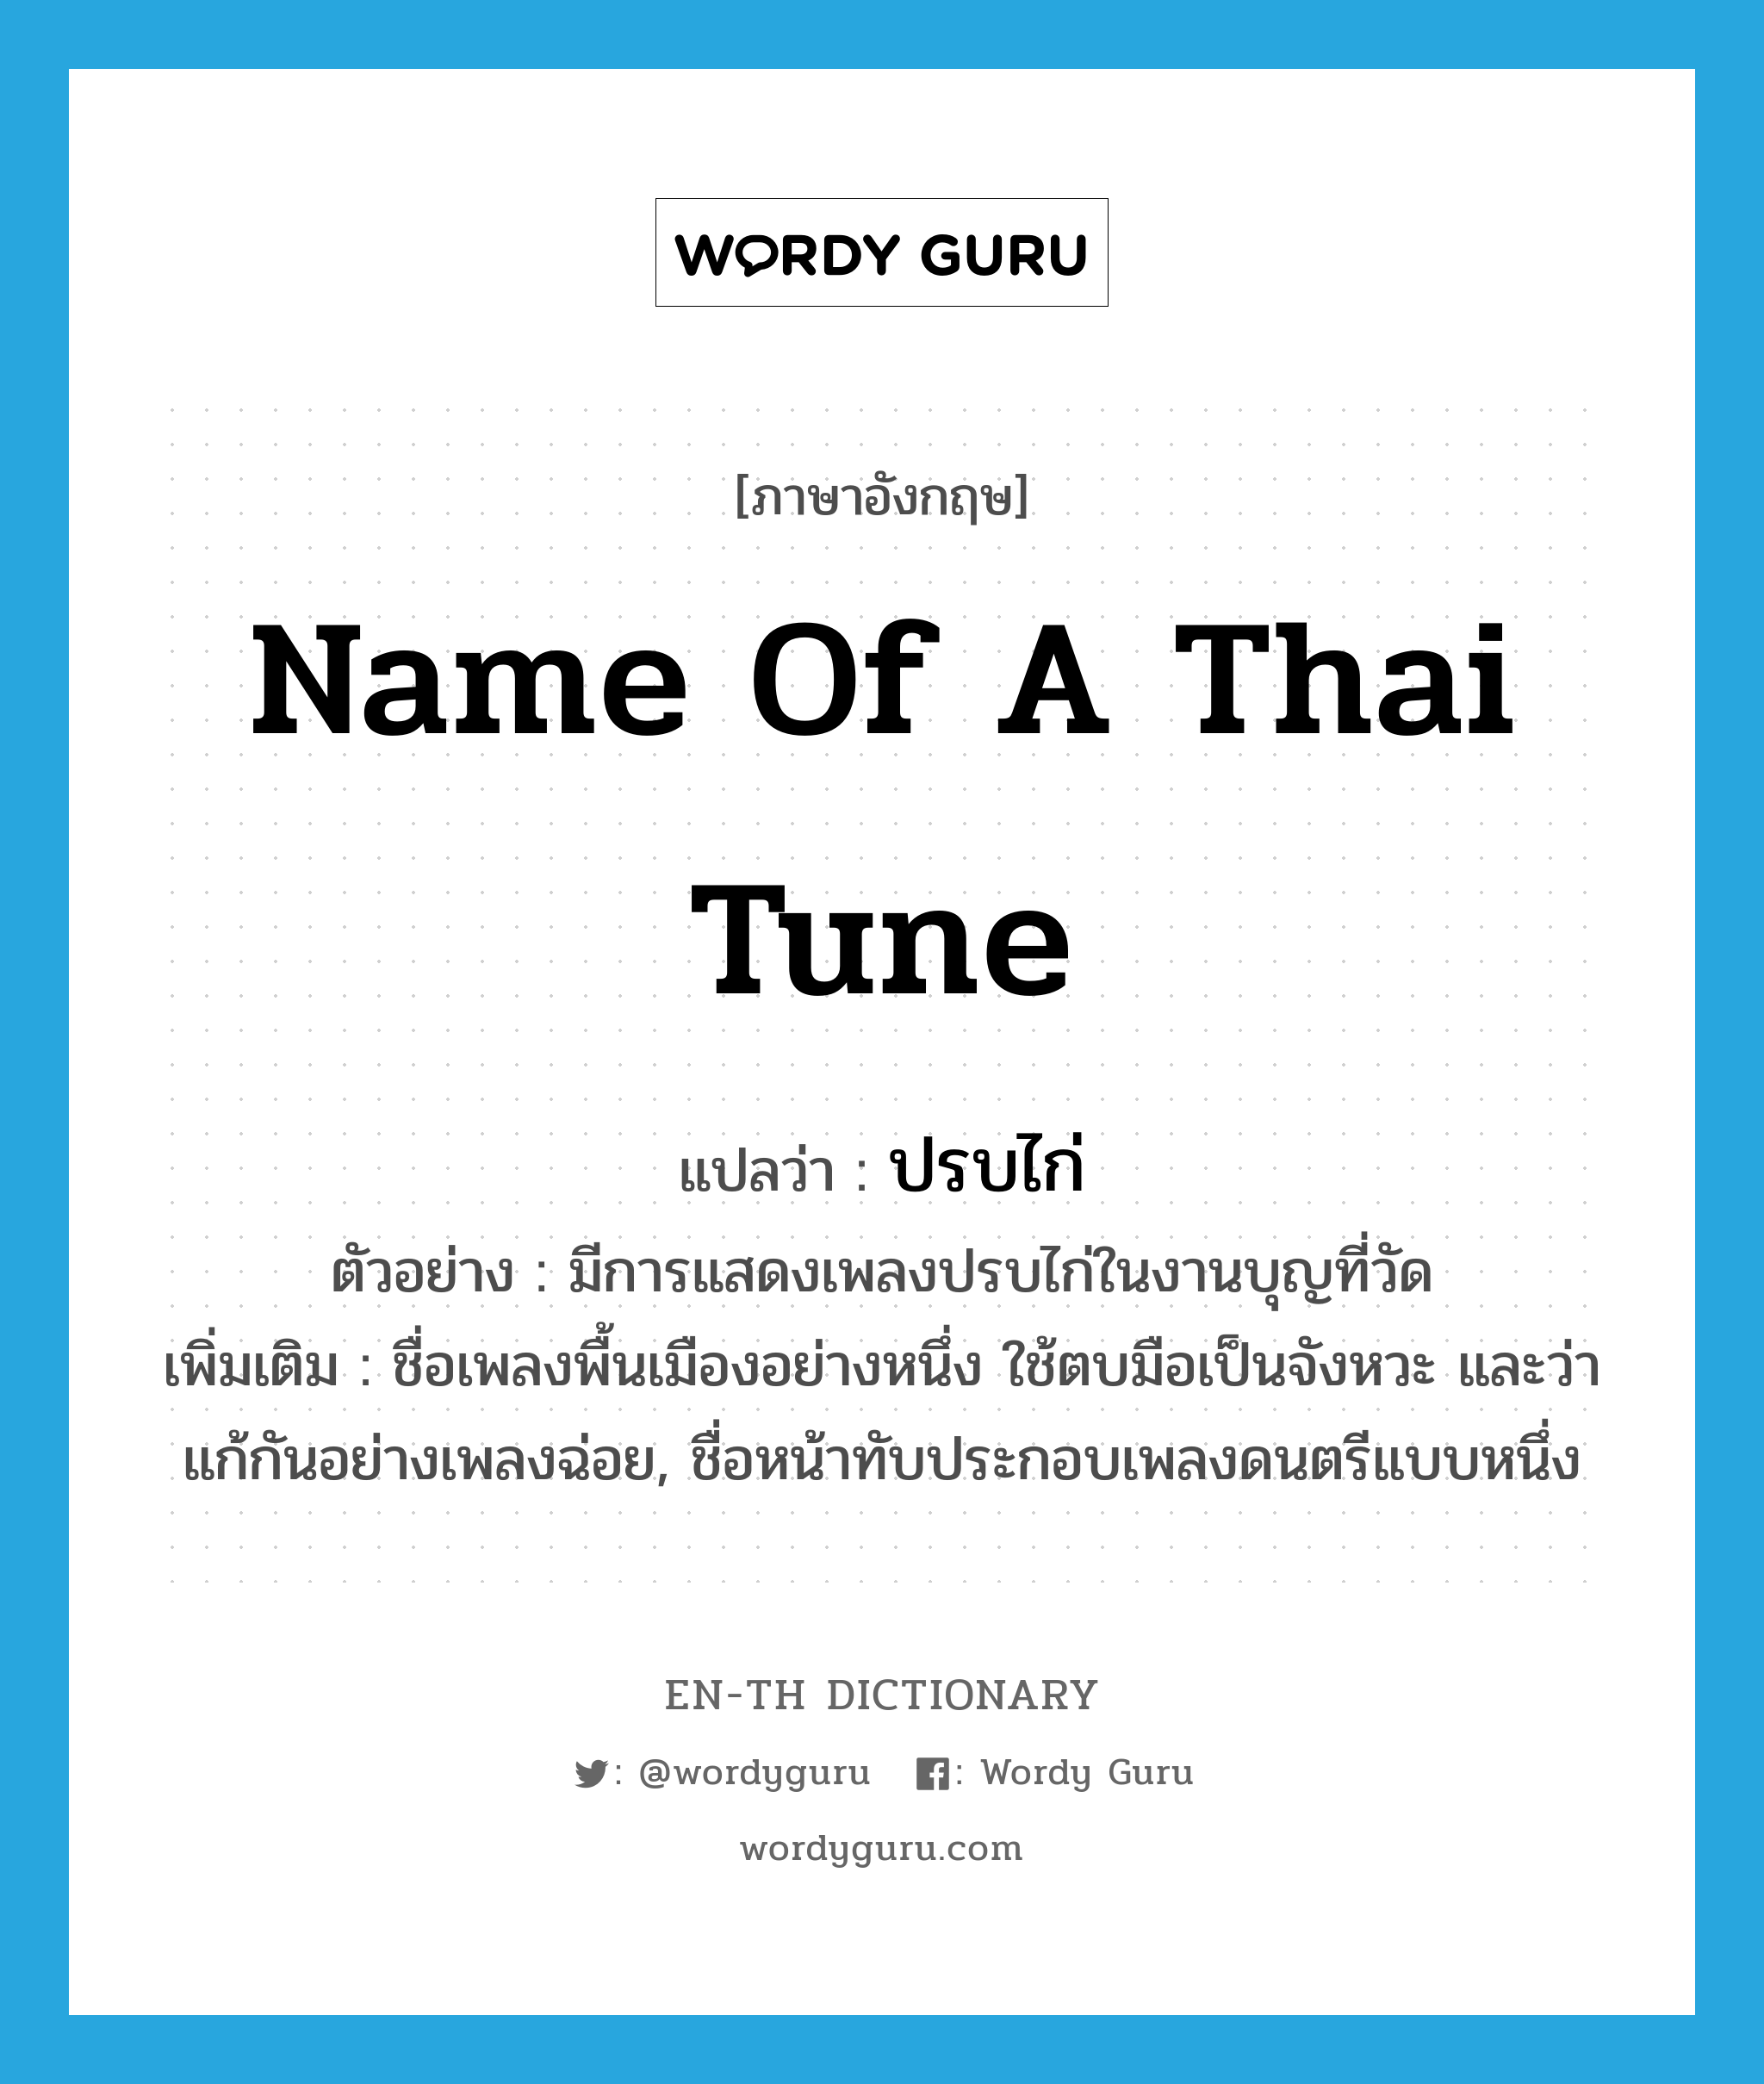 ปรบไก่ ภาษาอังกฤษ?, คำศัพท์ภาษาอังกฤษ ปรบไก่ แปลว่า name of a Thai tune ประเภท N ตัวอย่าง มีการแสดงเพลงปรบไก่ในงานบุญที่วัด เพิ่มเติม ชื่อเพลงพื้นเมืองอย่างหนึ่ง ใช้ตบมือเป็นจังหวะ และว่าแก้กันอย่างเพลงฉ่อย, ชื่อหน้าทับประกอบเพลงดนตรีแบบหนึ่ง หมวด N